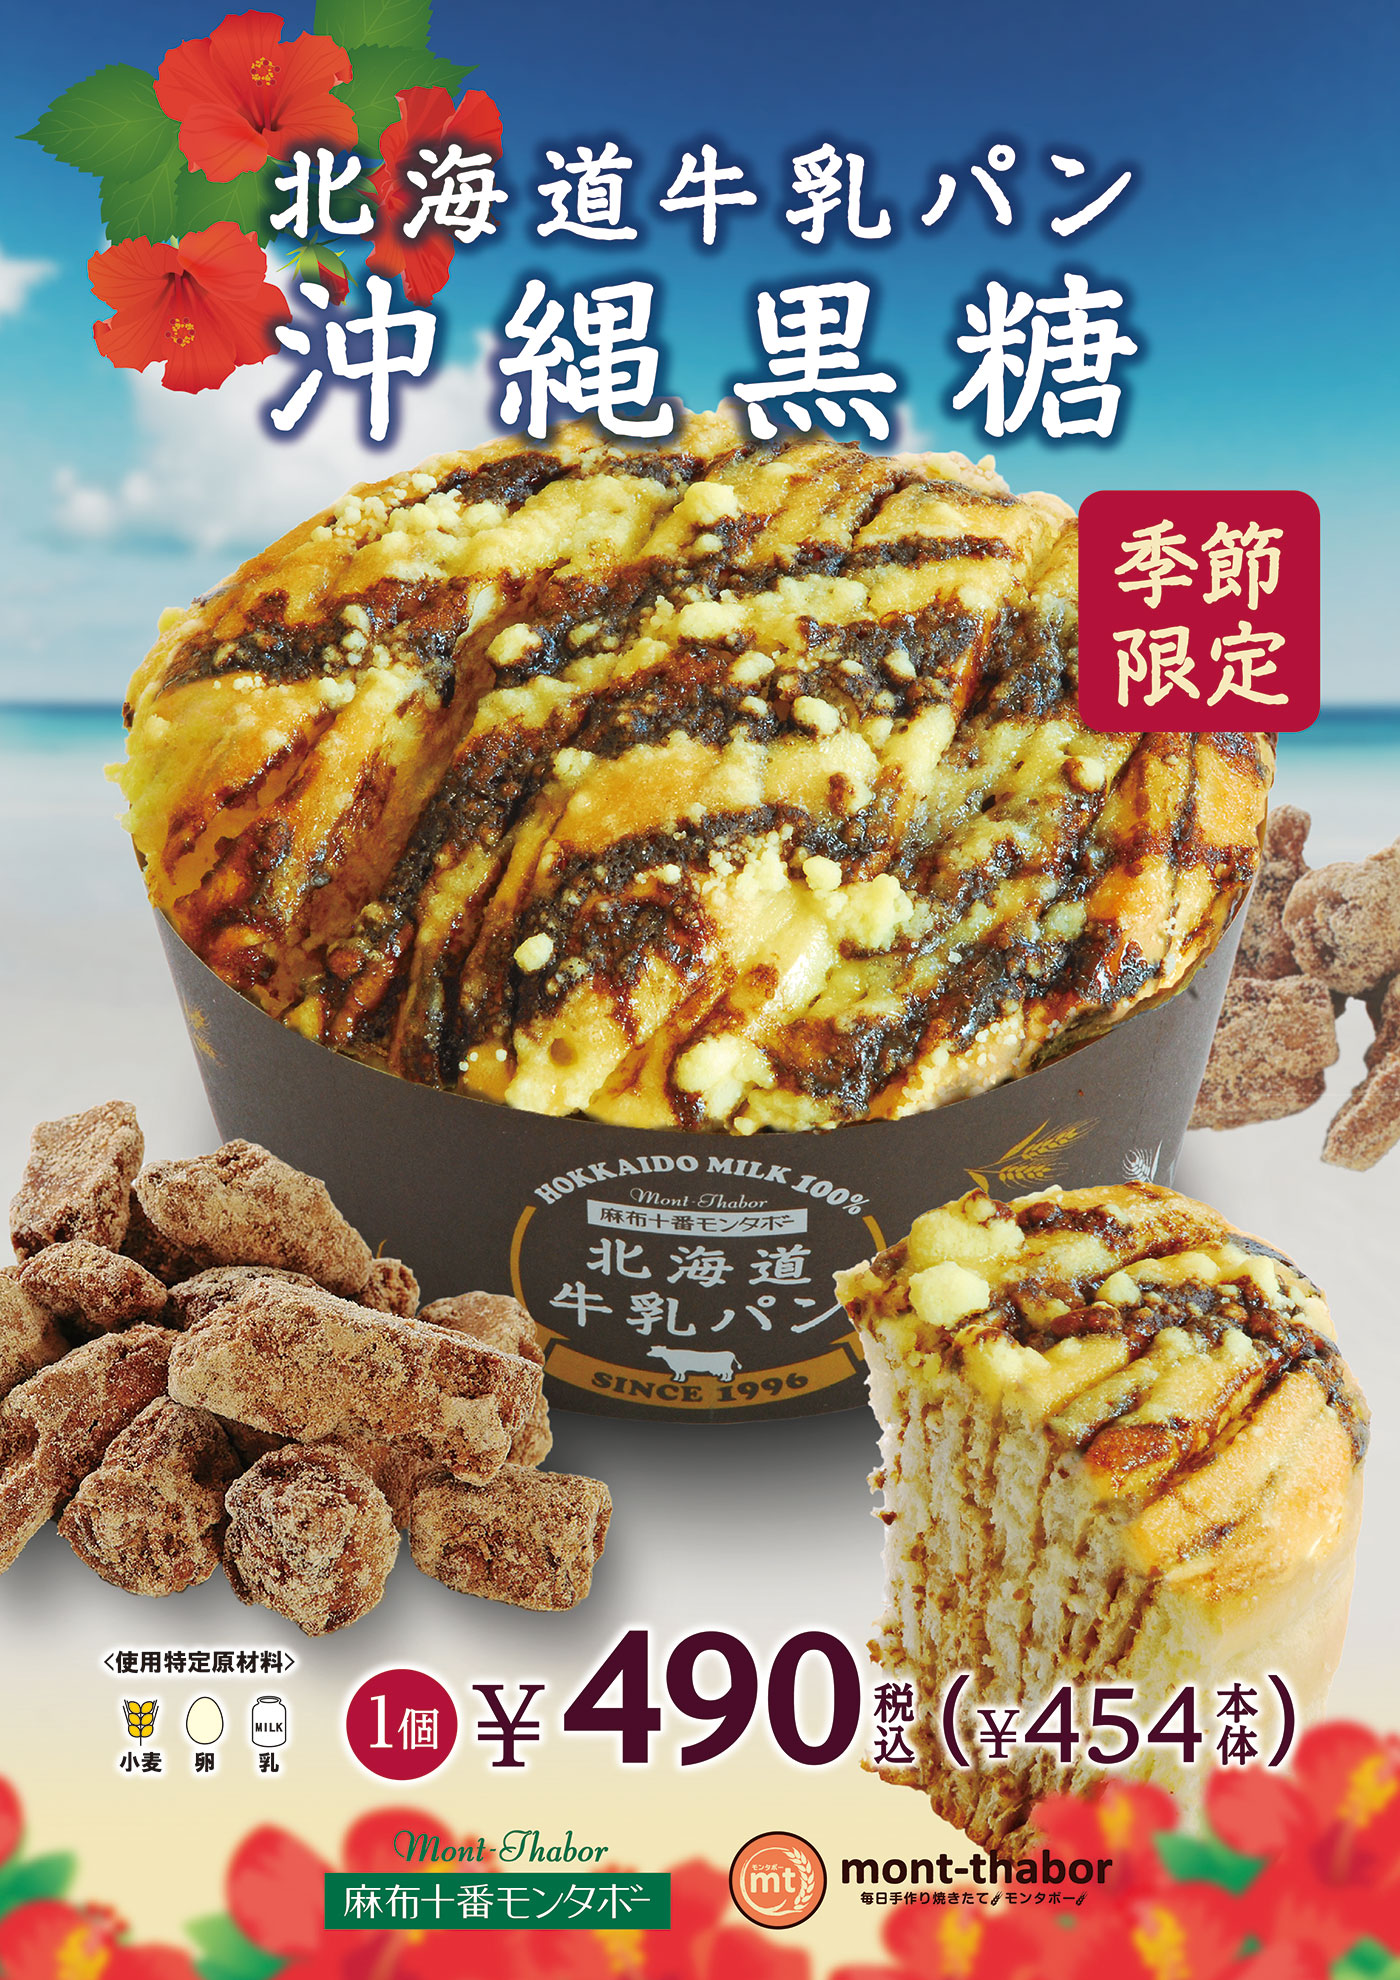 2022年5月発売 「北海道牛乳パン 沖縄黒糖」。沖縄産黒糖のクリームと北海道牛乳使用クリームは相性抜群。黒糖ソースでさらに濃厚な味わいに。